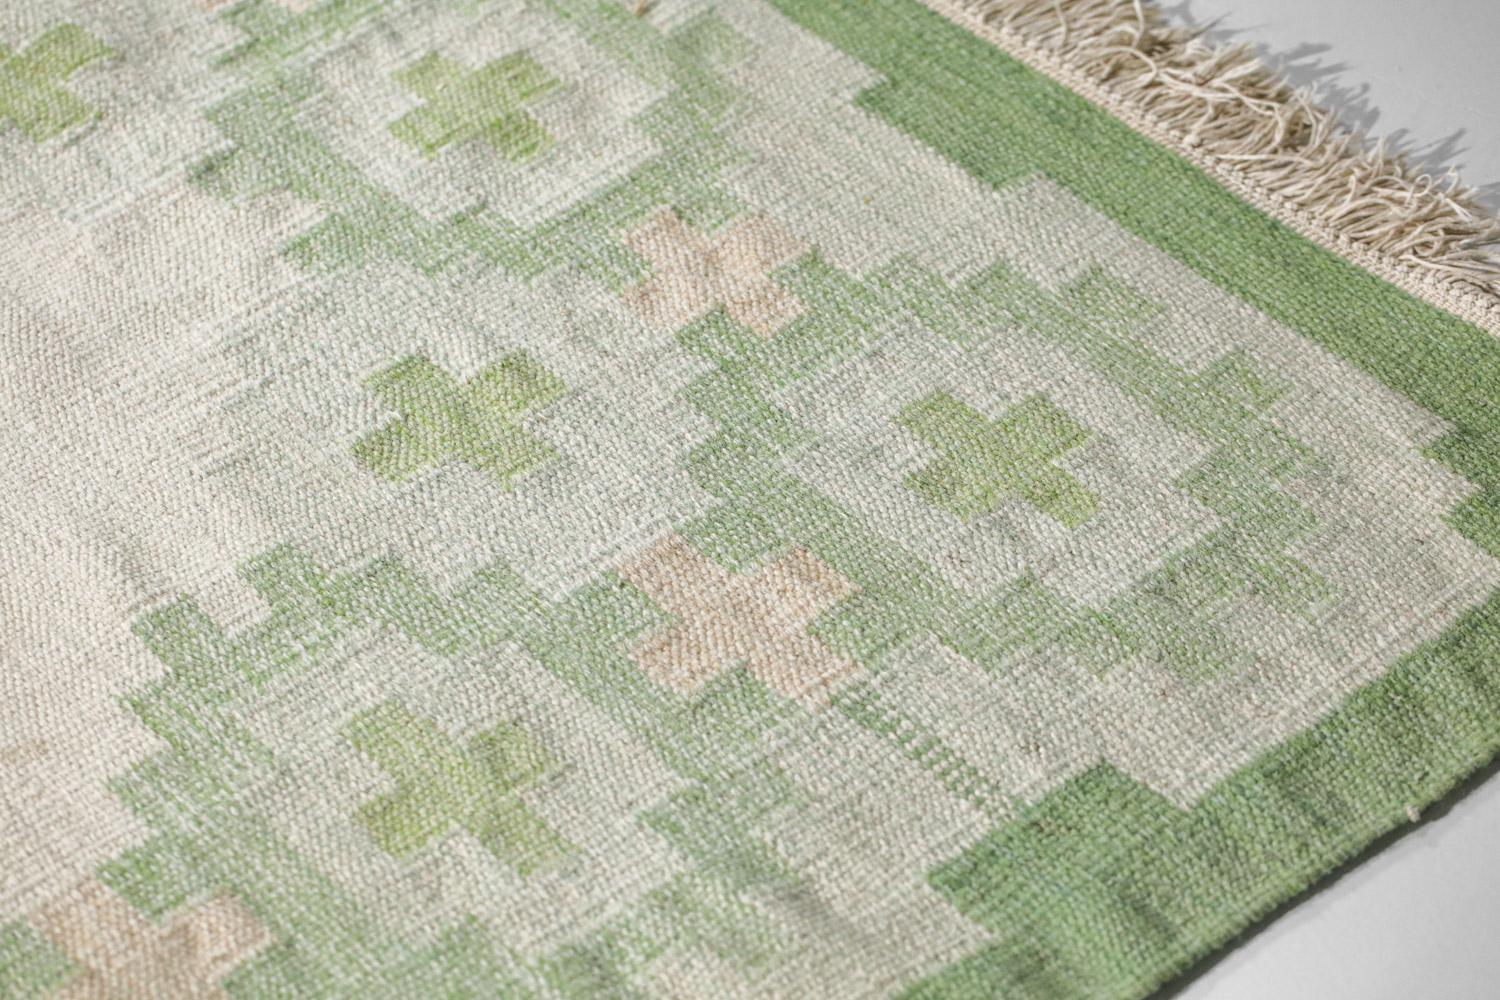 Très grand tapis scandinave des années 60. Technique de tissage à plat (röllakan), laine sur lin. Motifs géométriques traditionnels dans les couleurs vert, blanc et beige. Tissé à la main en Suède dans les années 50 et 60. Excellent état vintage